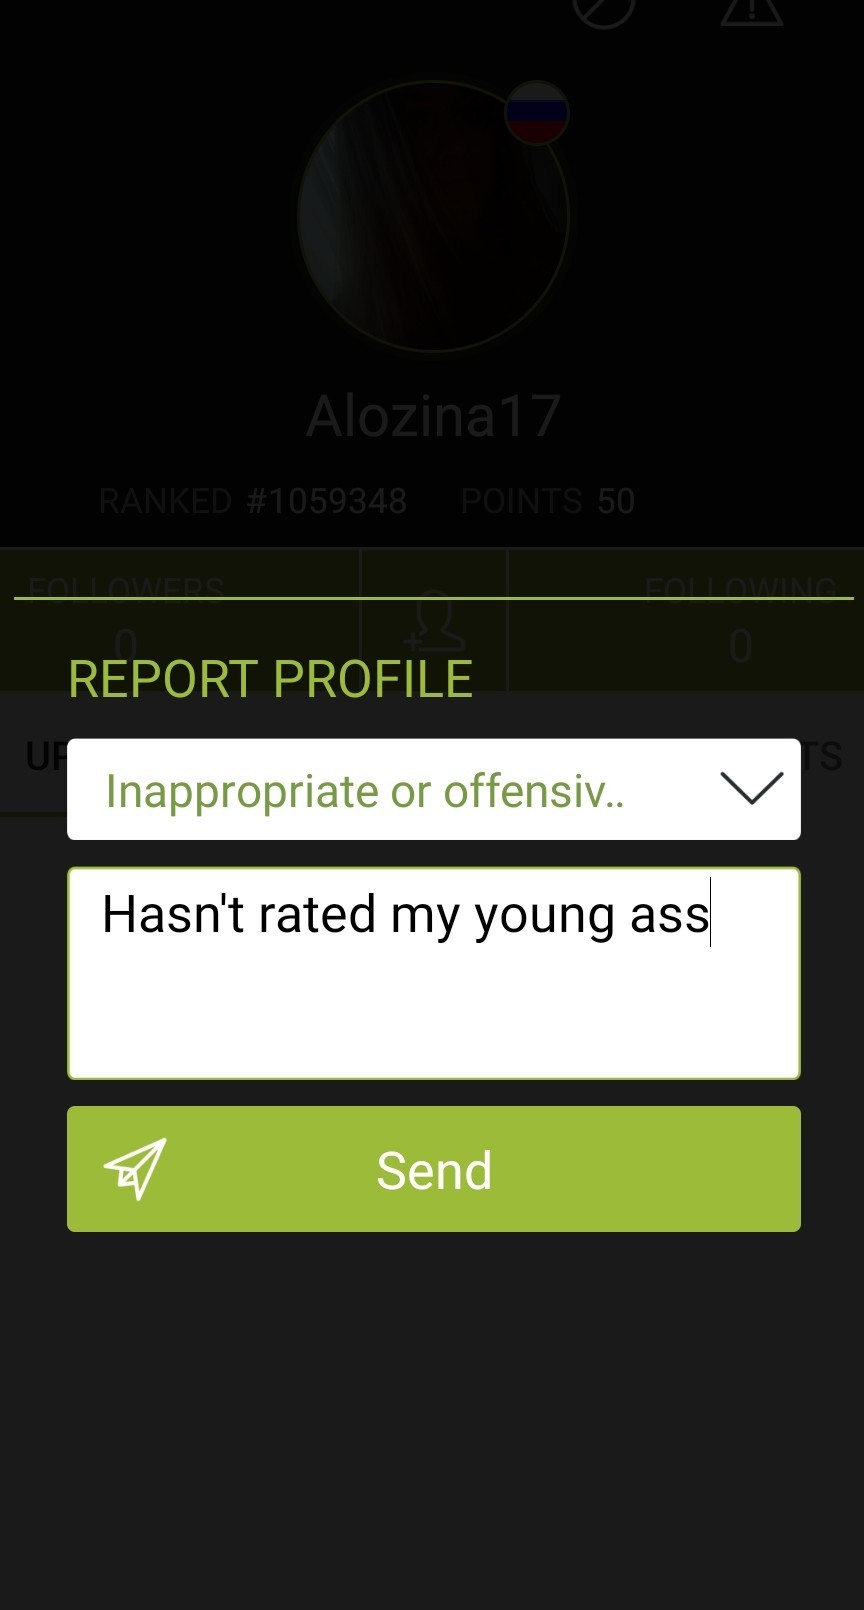 Alozina17 rate my young ass bitch - meme